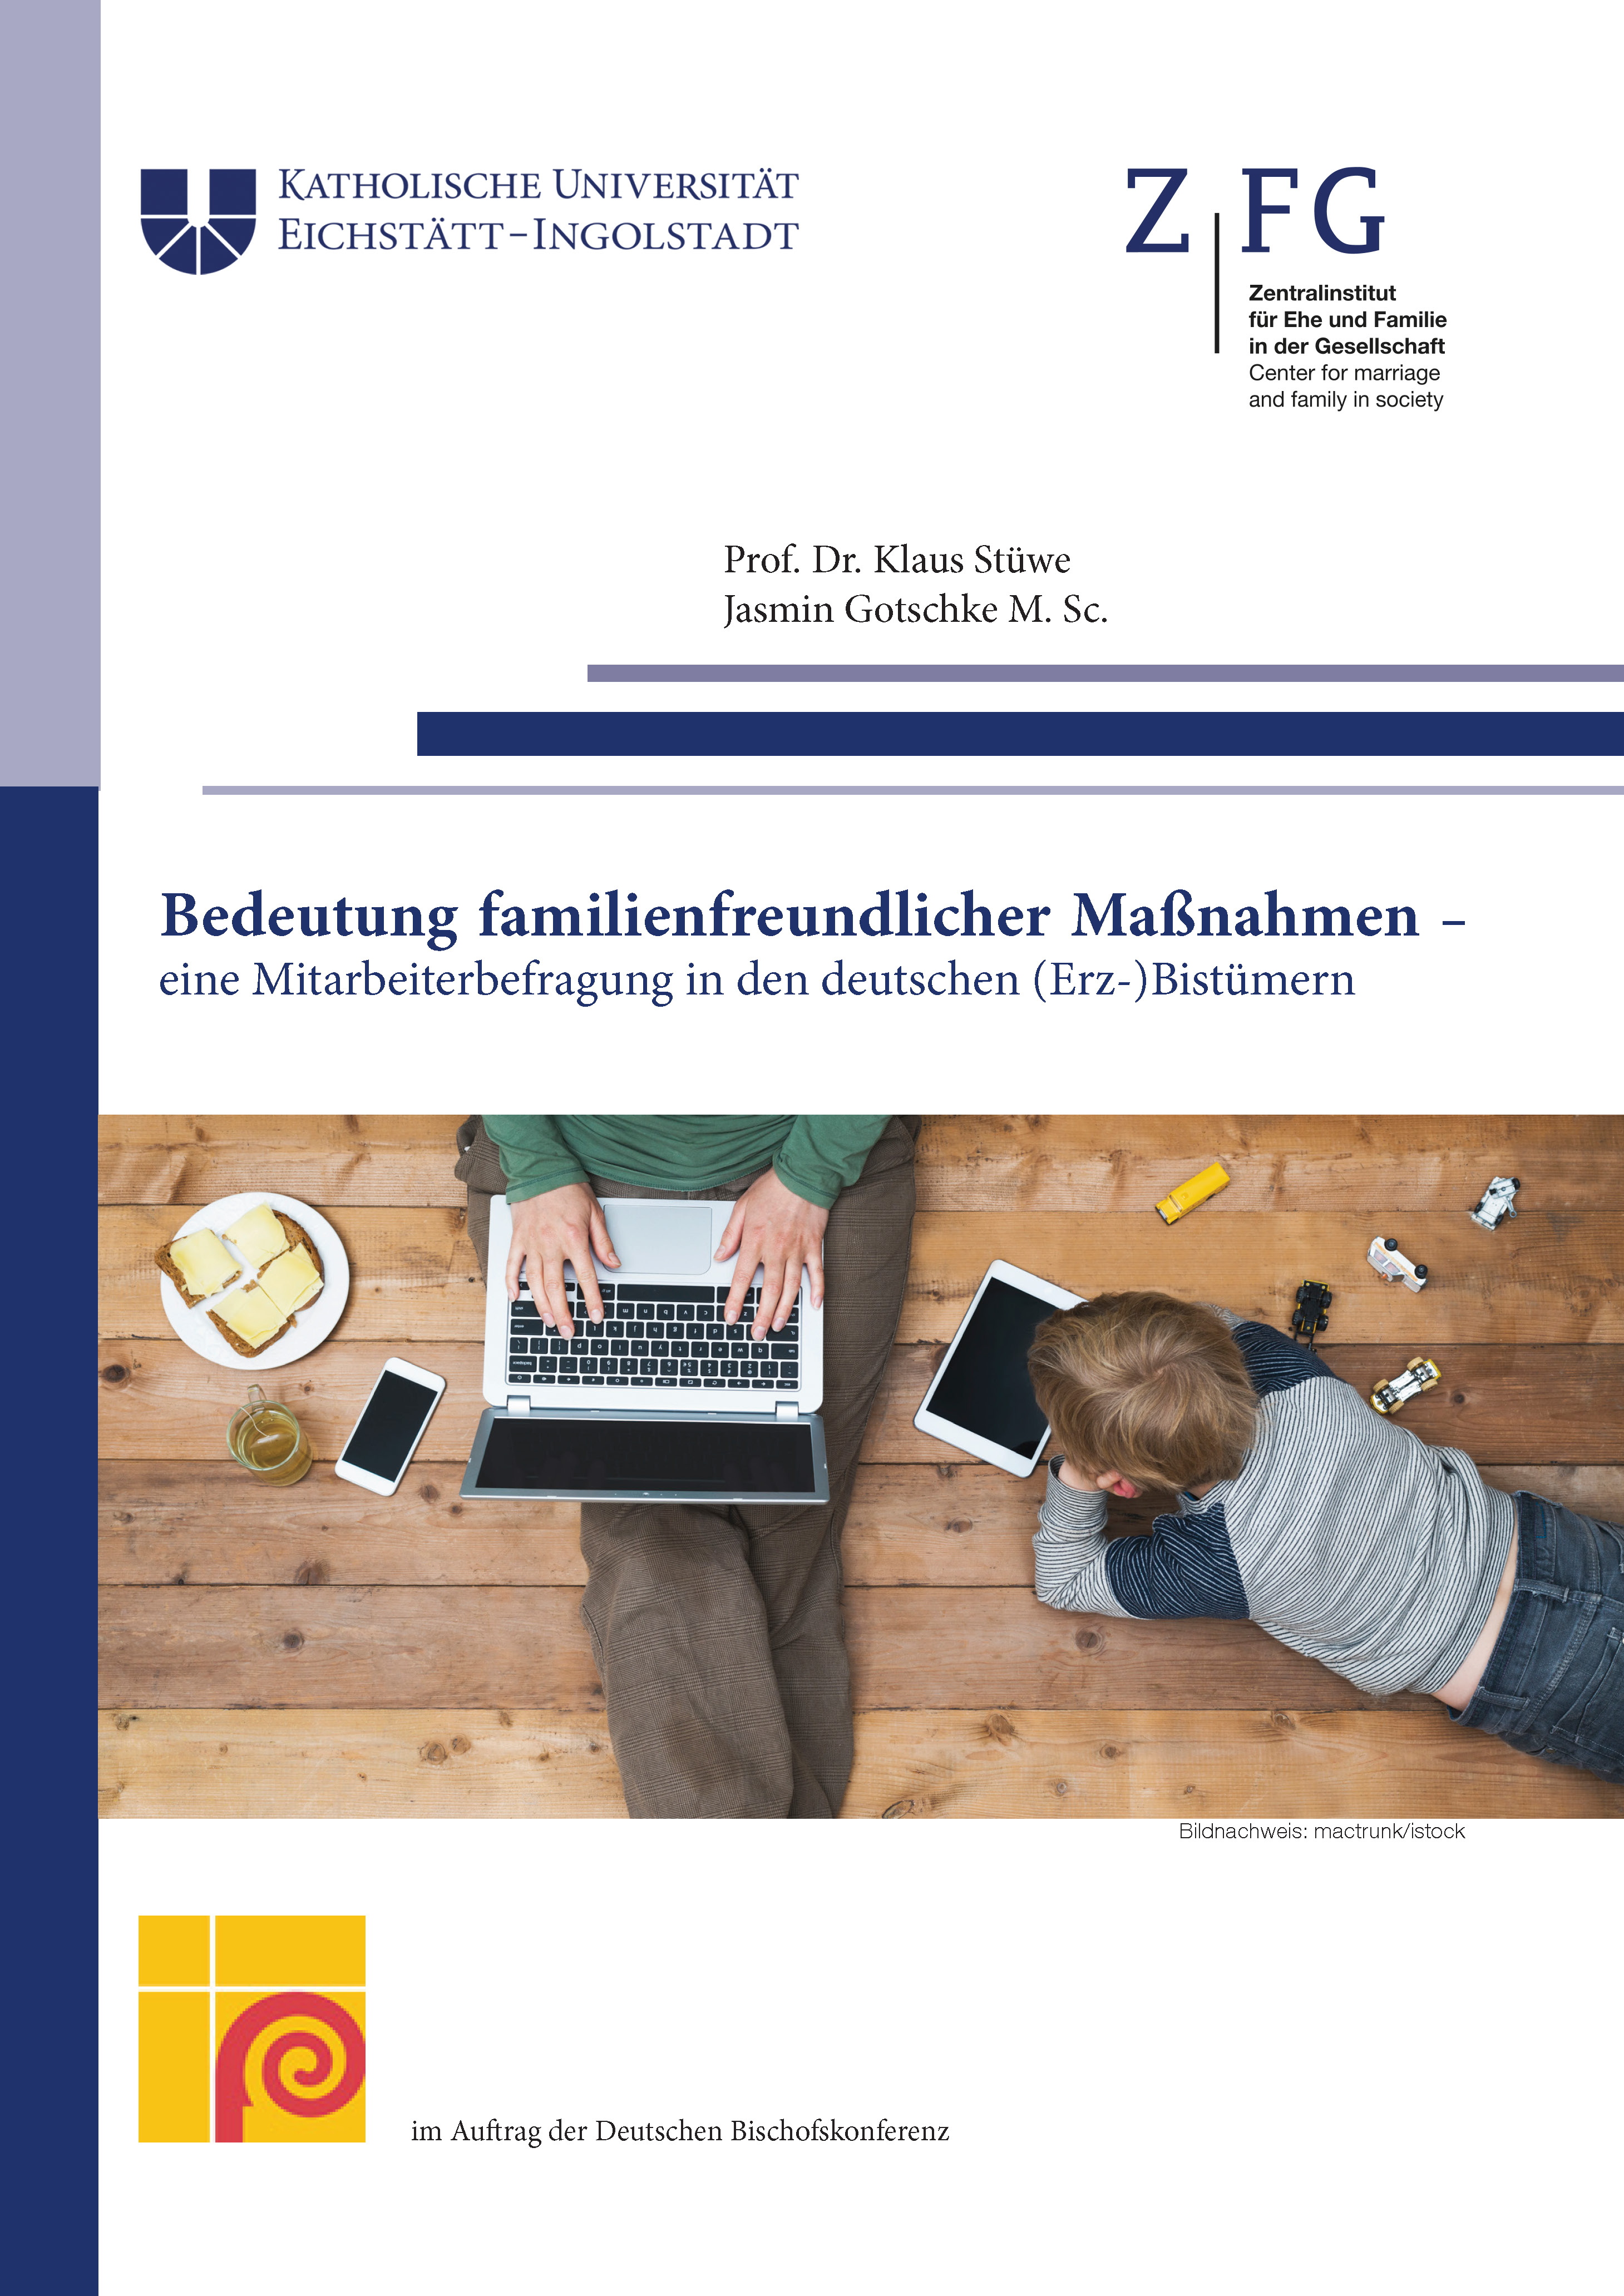 Titelseite Studie Familienfreundlichkeit Bistümer